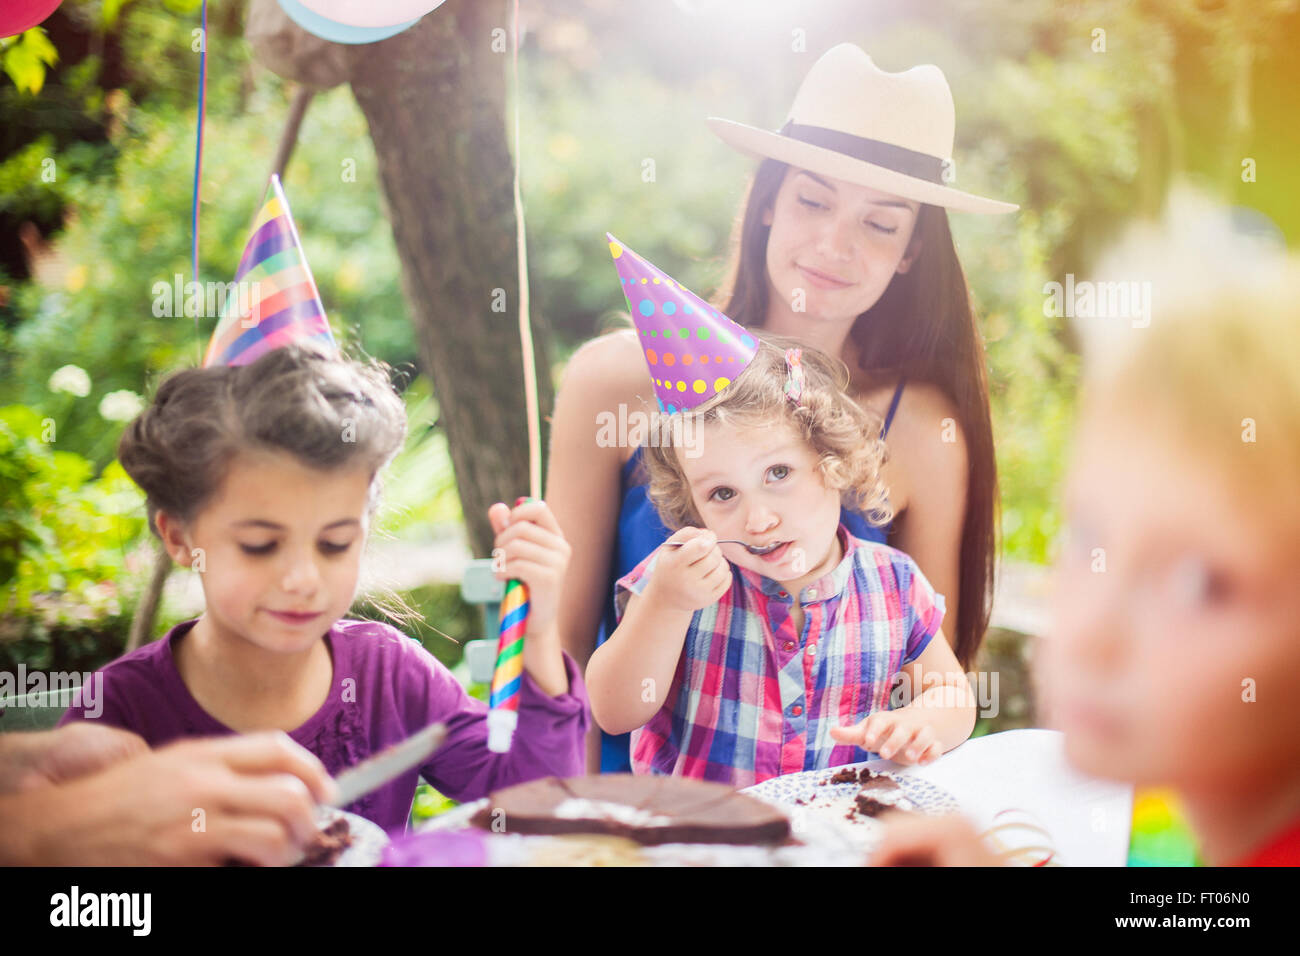 Garden Party familia compartiendo la torta de cumpleaños. El niño de 3 años  está disfrutando de su obra, el jardín está decorado con globos y los  colores son brillantes Fotografía de stock 